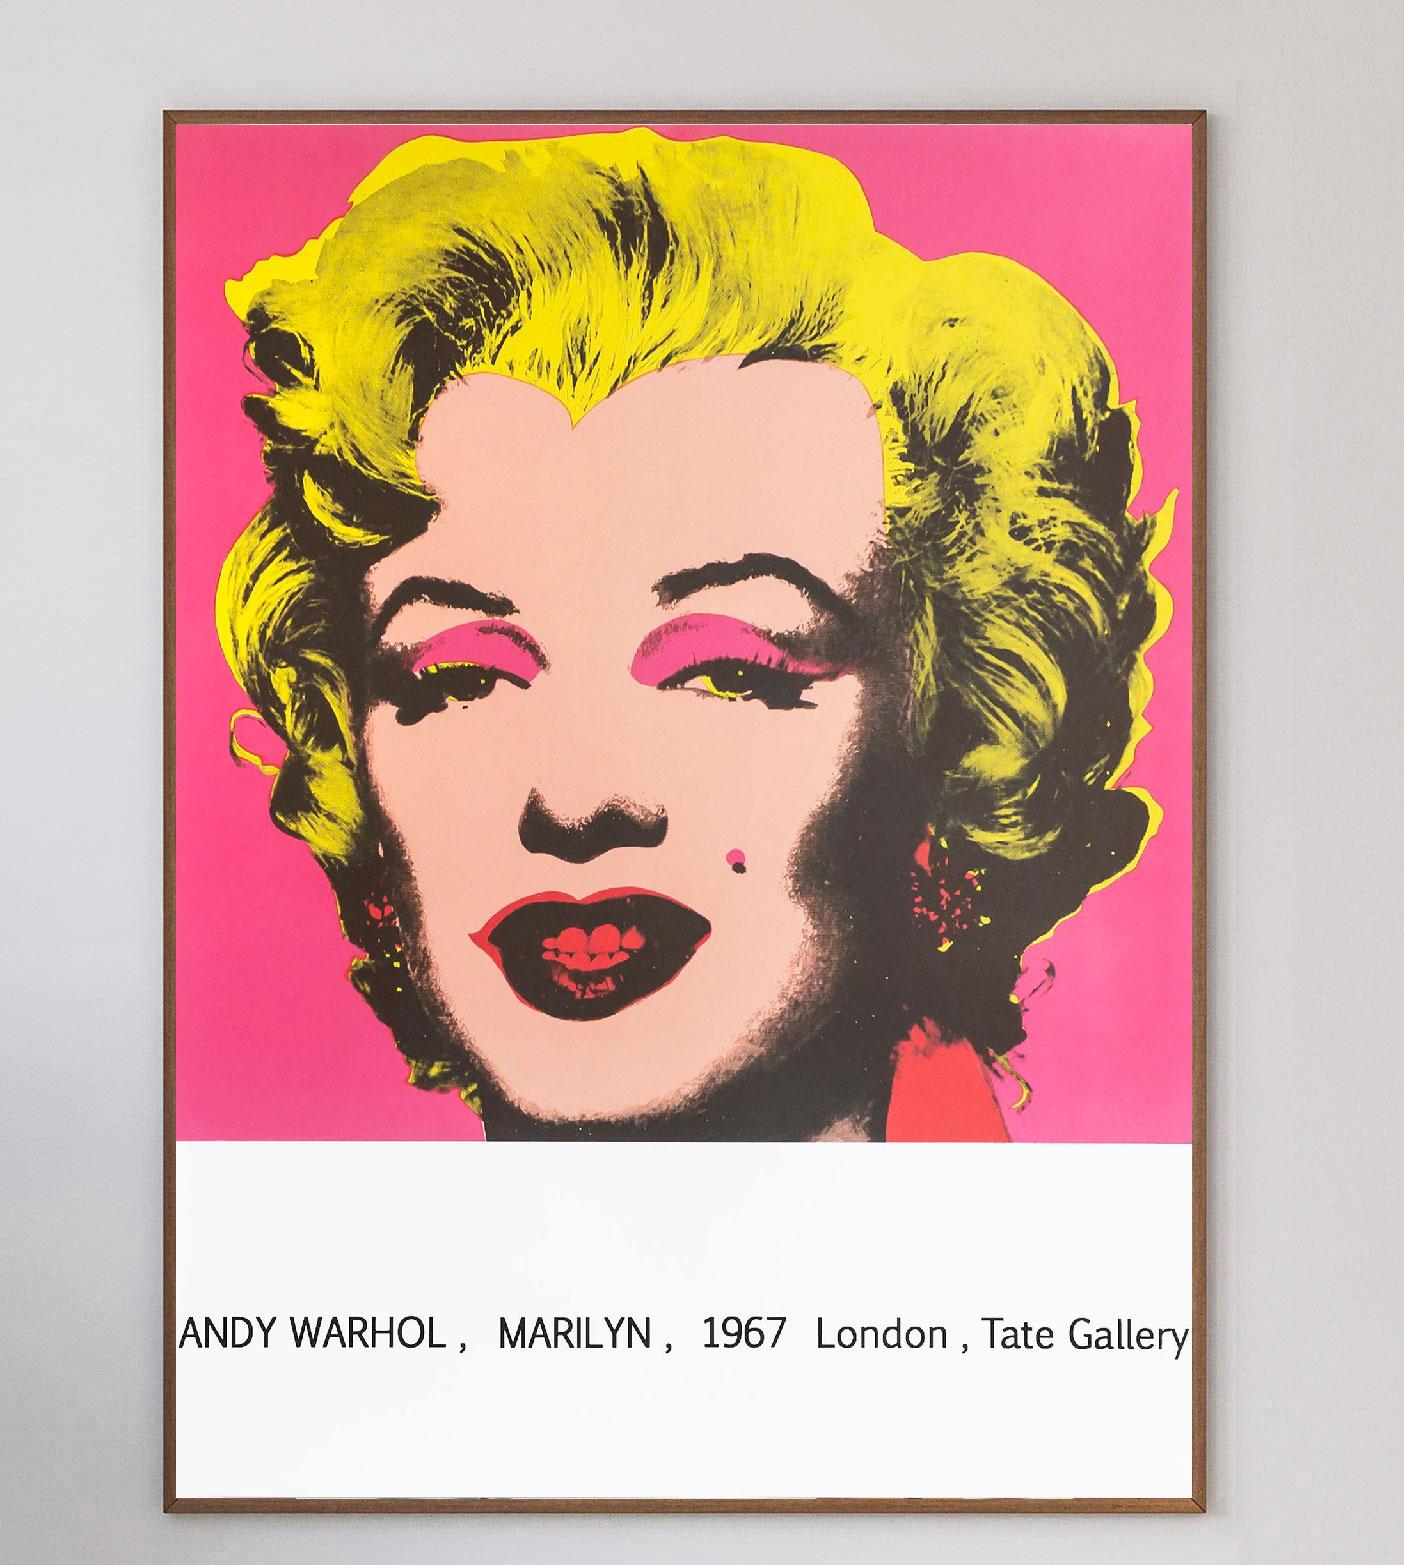 Limitiertes Original-Plakat der Andy-Warhol-Ausstellung von 1967 in der Tate Museum Gallery in London.

Das vielleicht berühmteste Bild von Marilyn Monroe ist auf mittelstarkem Papier gedruckt, und die Farben sind extrem leuchtend und lebendig. Das